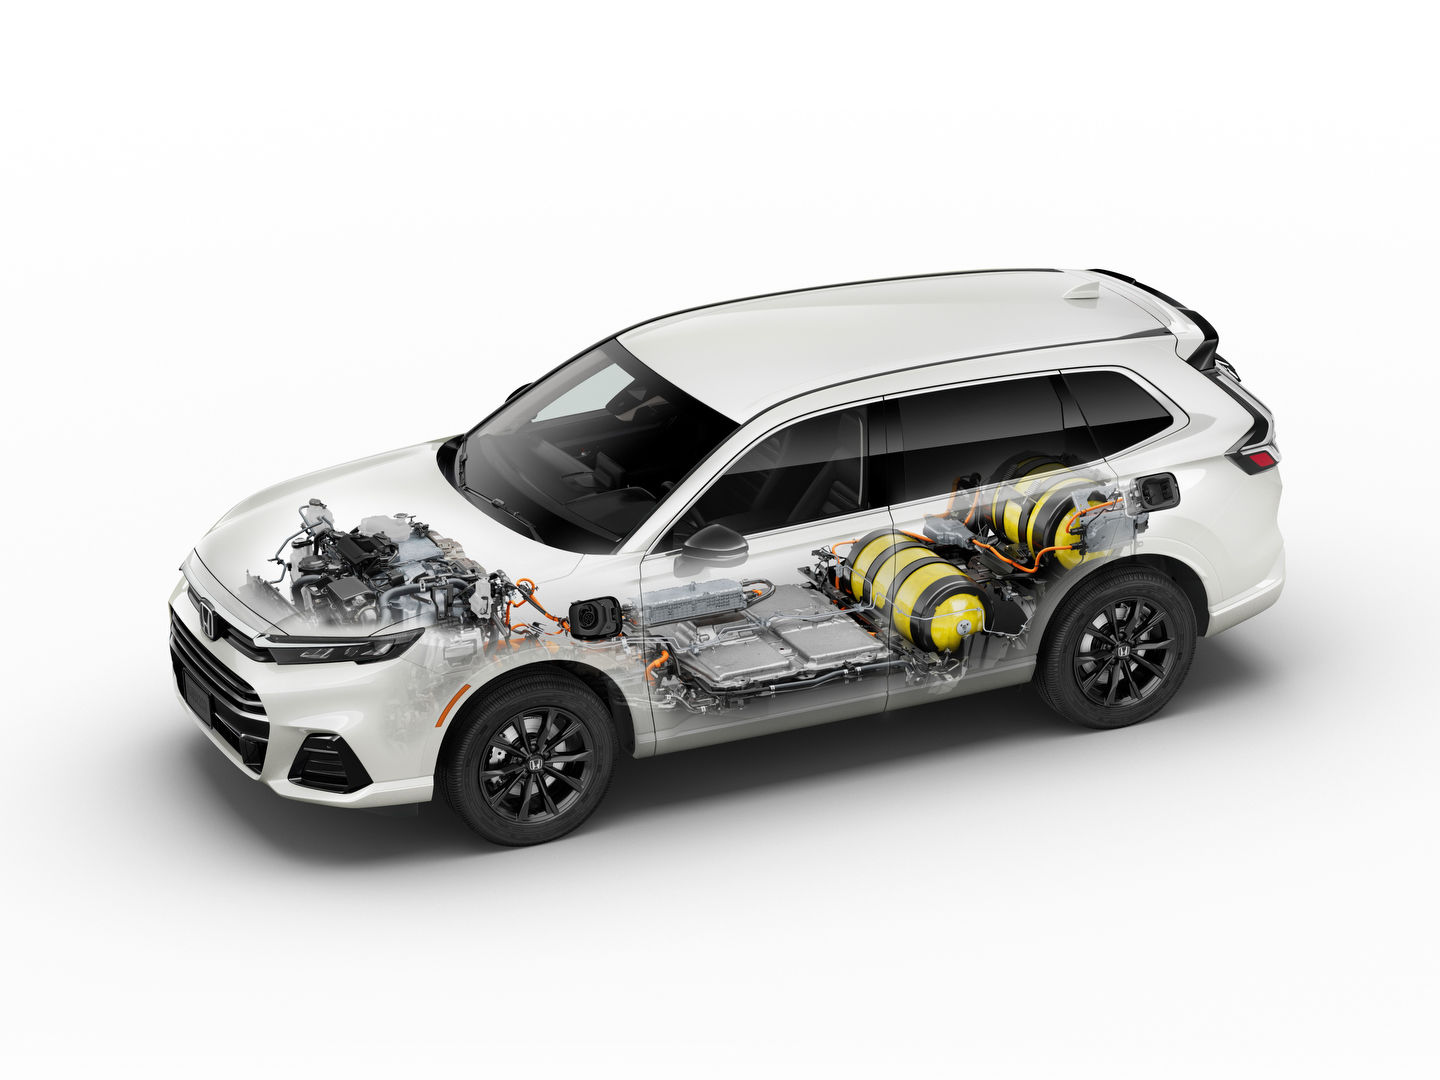 Le Honda CR-V e:FCEV 2025 fait ses débuts en tant que premier véhicule électrique à pile à combustible à hydrogène rechargeable en Amérique